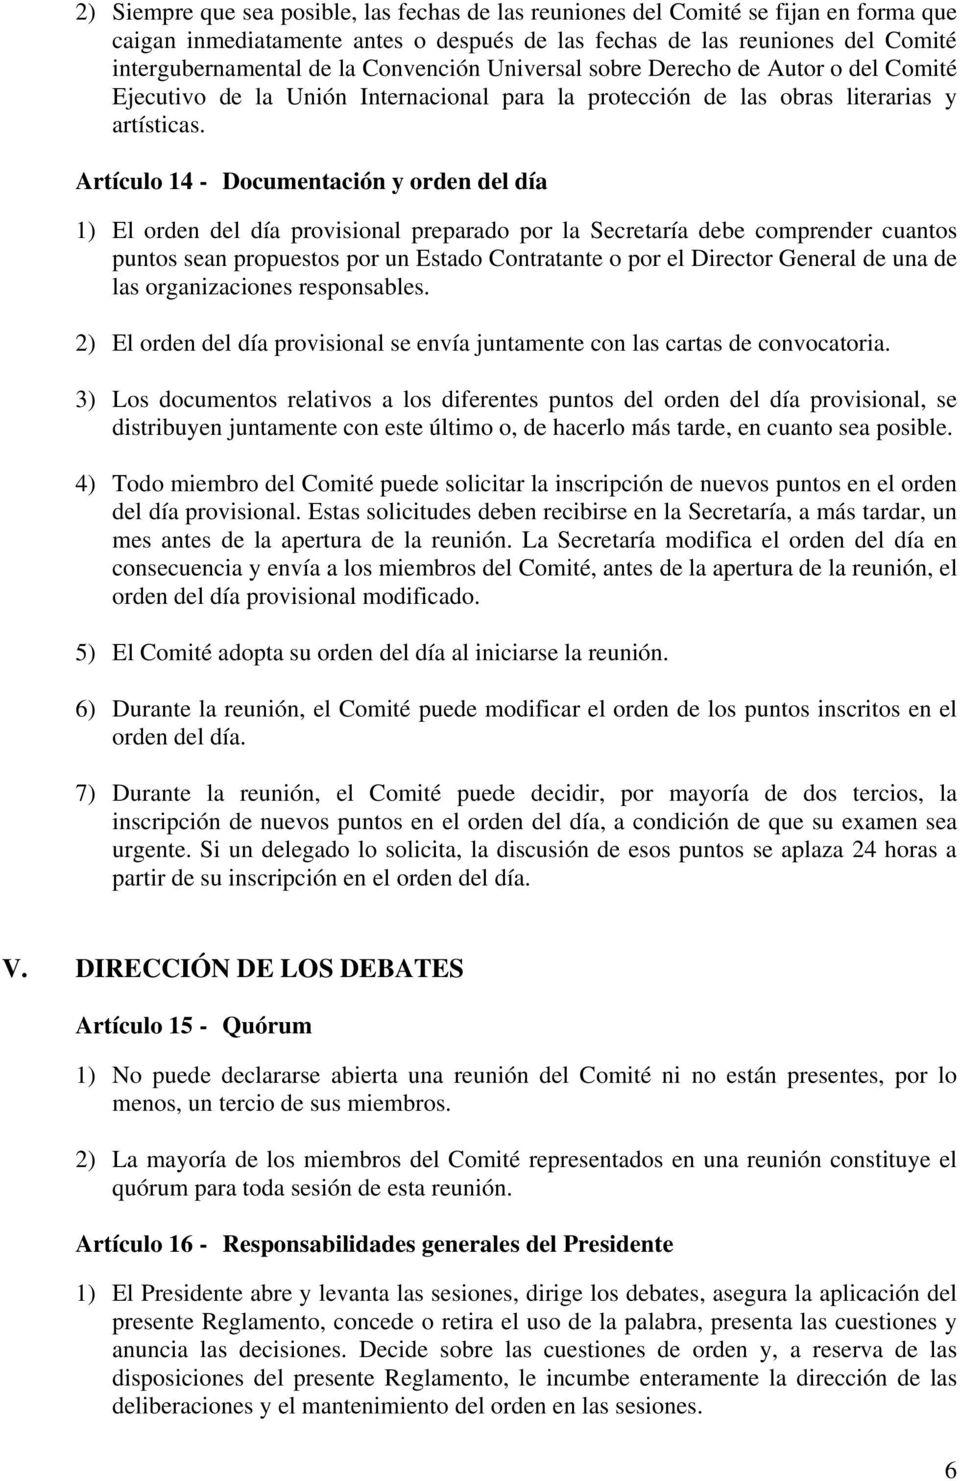 Artículo 14 - Documentación y orden del día 1) El orden del día provisional preparado por la Secretaría debe comprender cuantos puntos sean propuestos por un Estado Contratante o por el Director